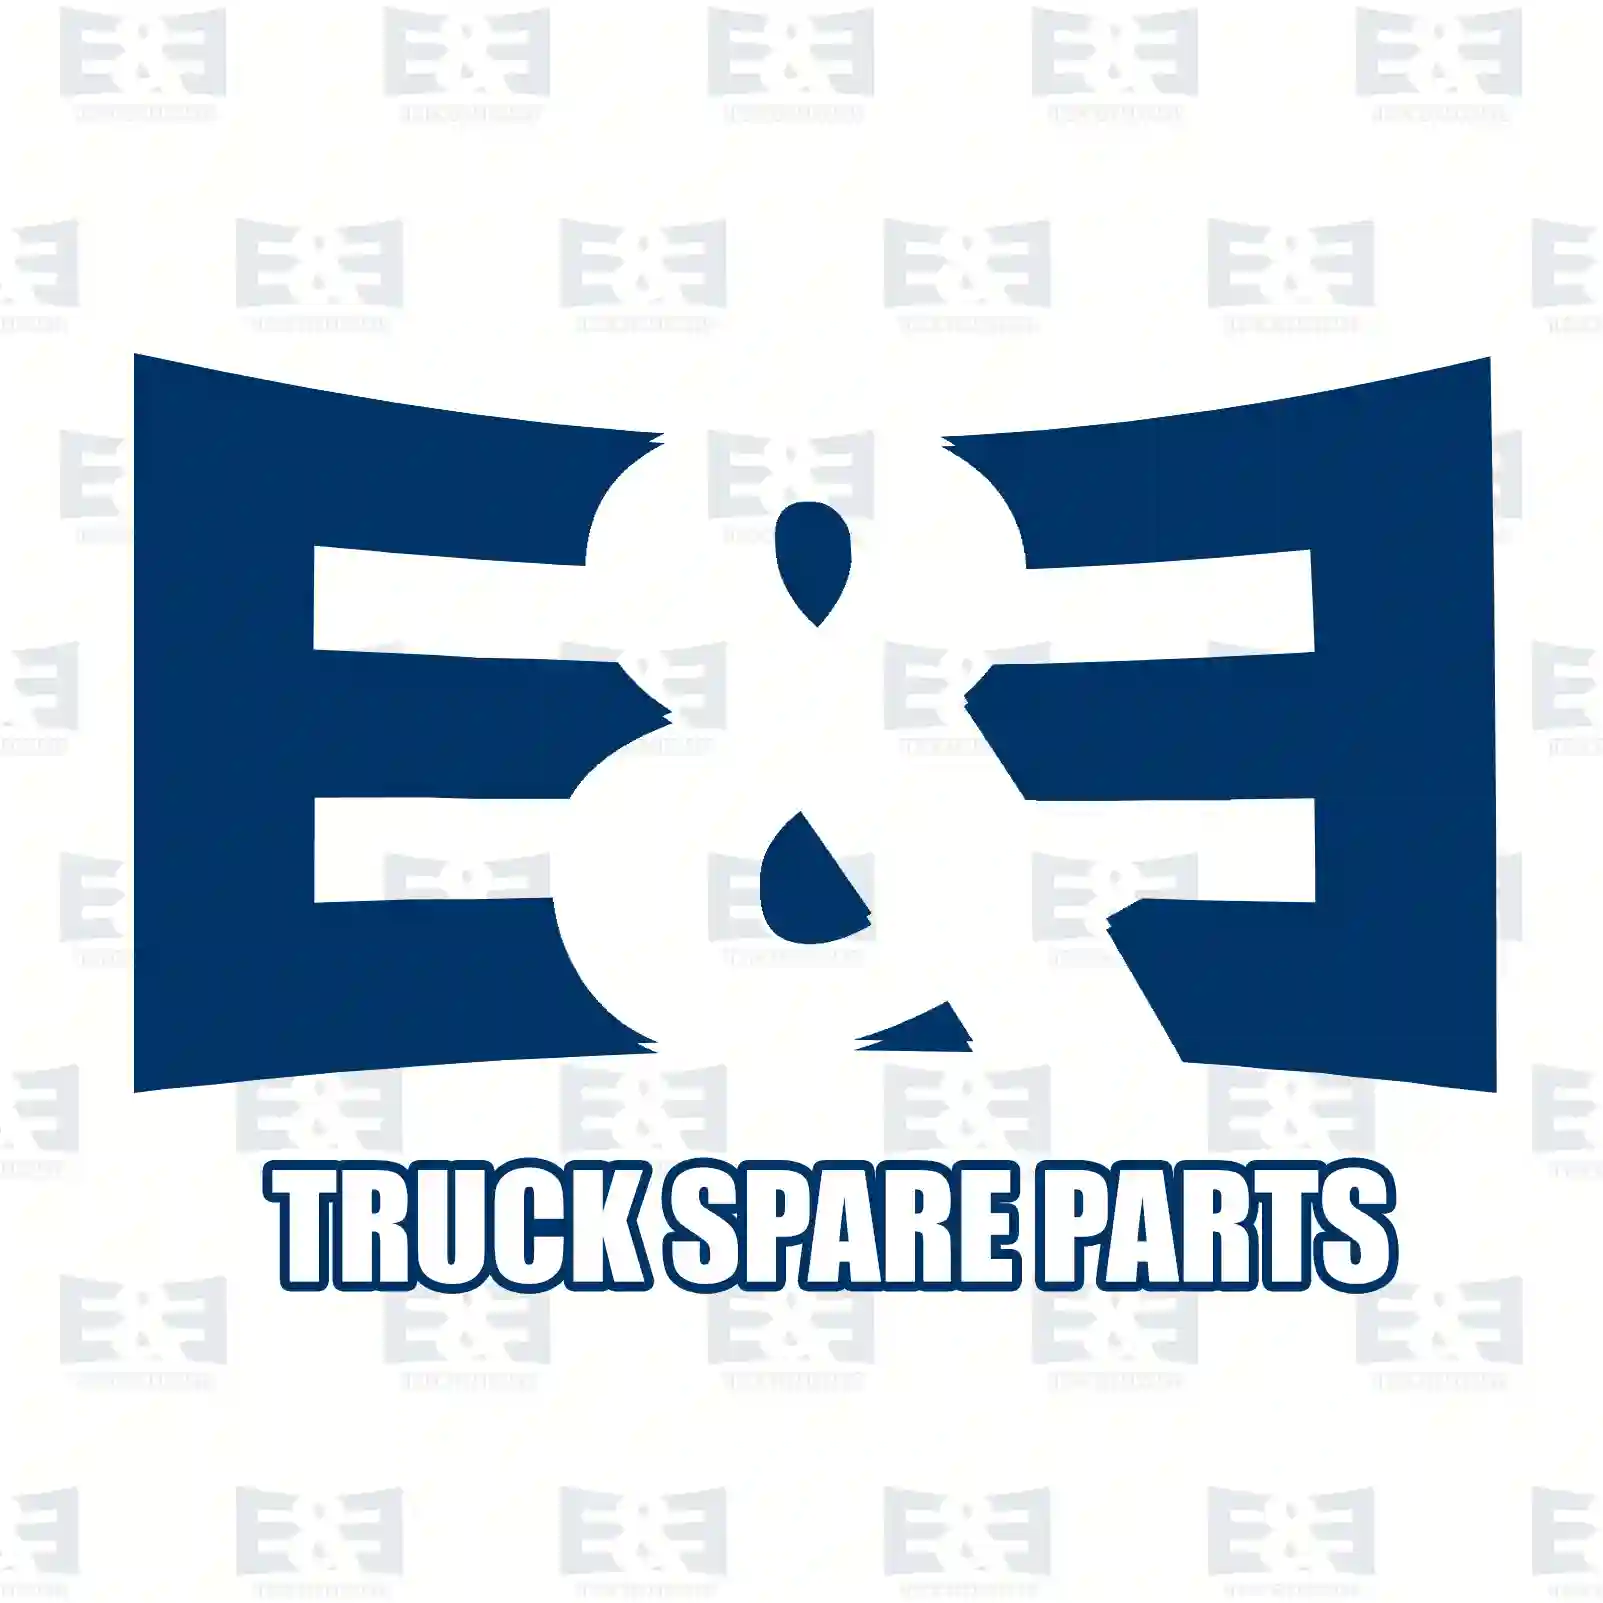 ABS sensor, rear, left, 2E2298751, 51764254, 51782787, 51801310, 52148324 ||  2E2298751 E&E Truck Spare Parts | Truck Spare Parts, Auotomotive Spare Parts ABS sensor, rear, left, 2E2298751, 51764254, 51782787, 51801310, 52148324 ||  2E2298751 E&E Truck Spare Parts | Truck Spare Parts, Auotomotive Spare Parts